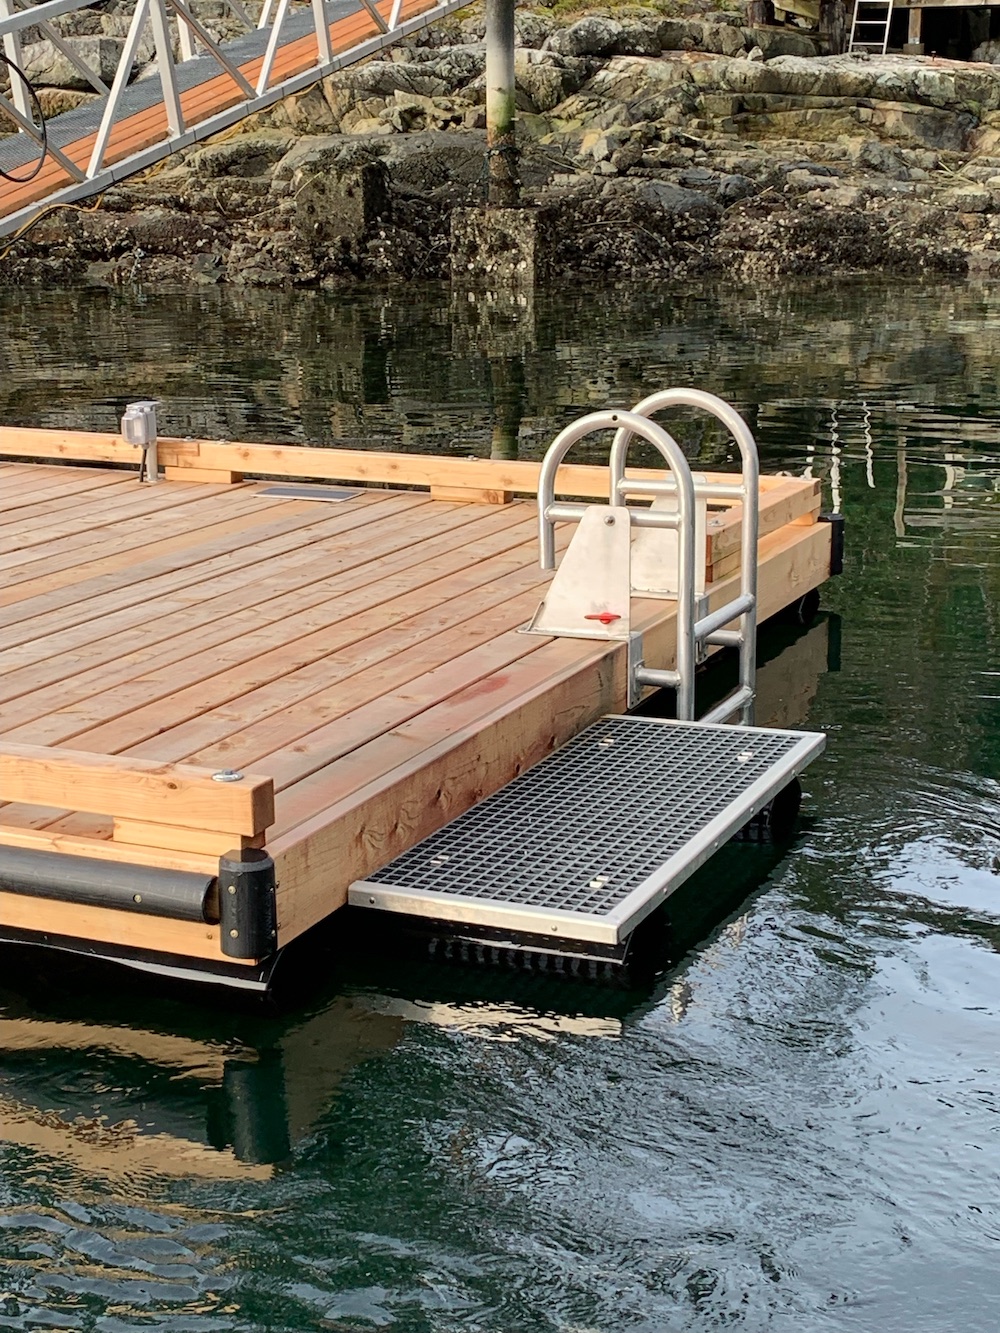 Dock with a swim grid